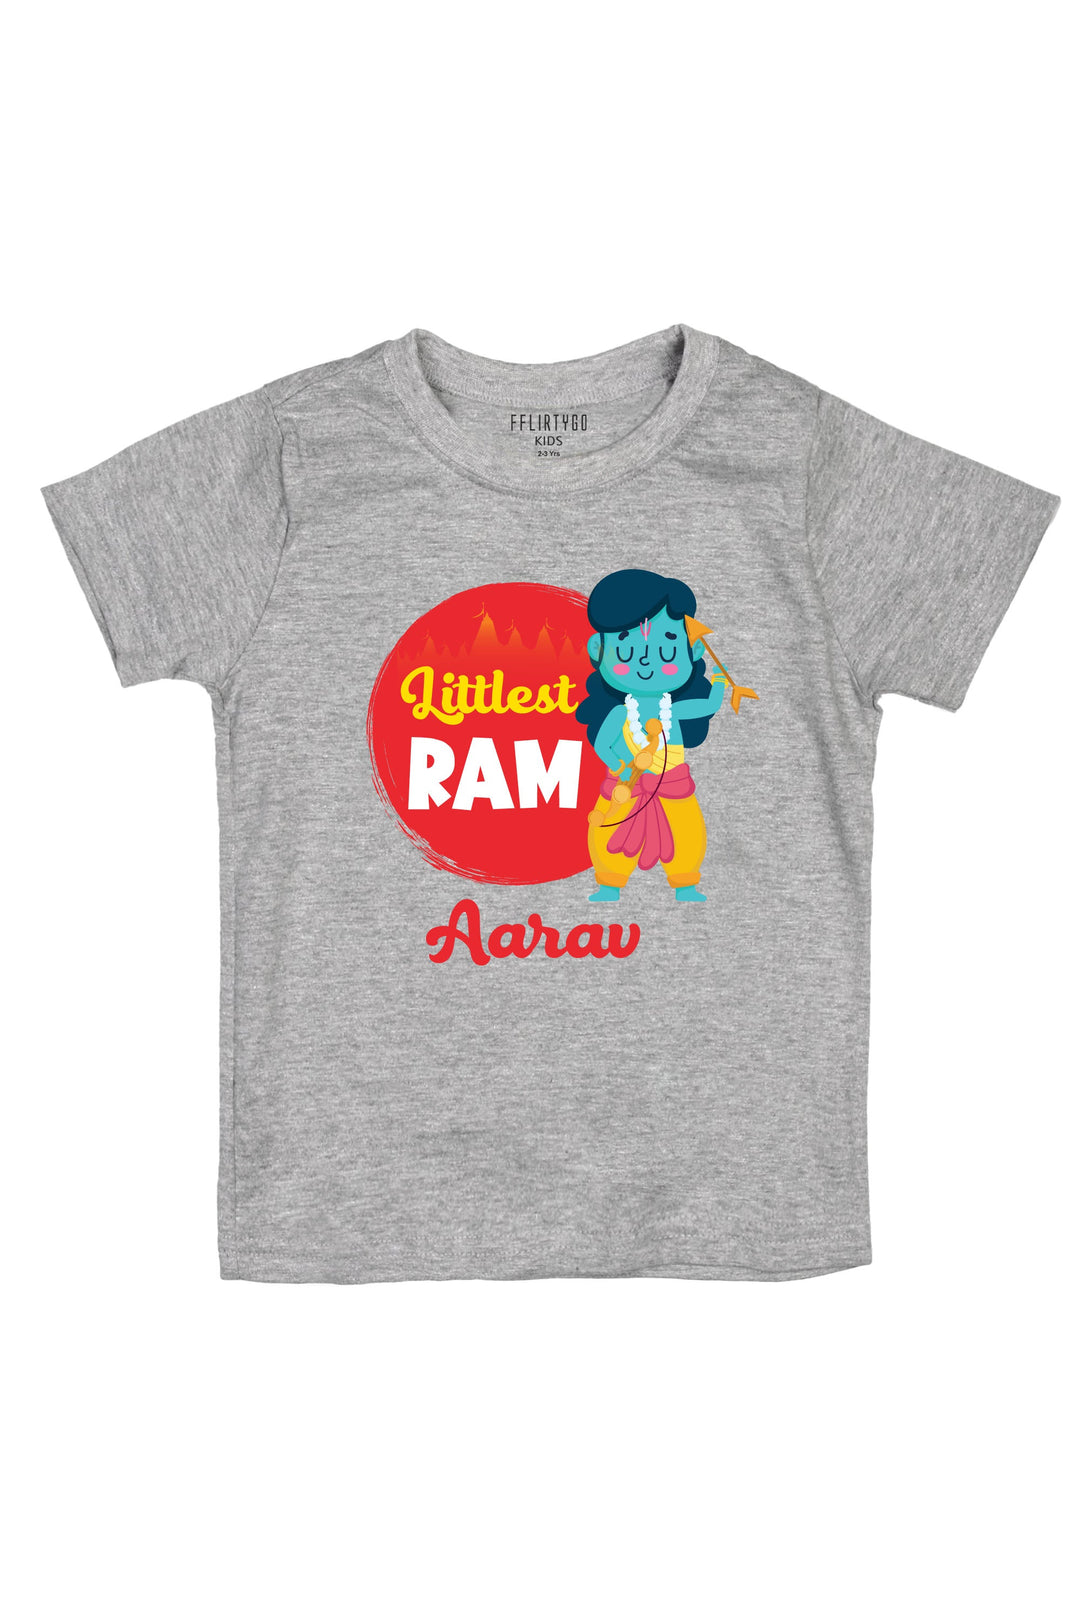 Littlest Ram Kids T Shirt w/ Custom Name